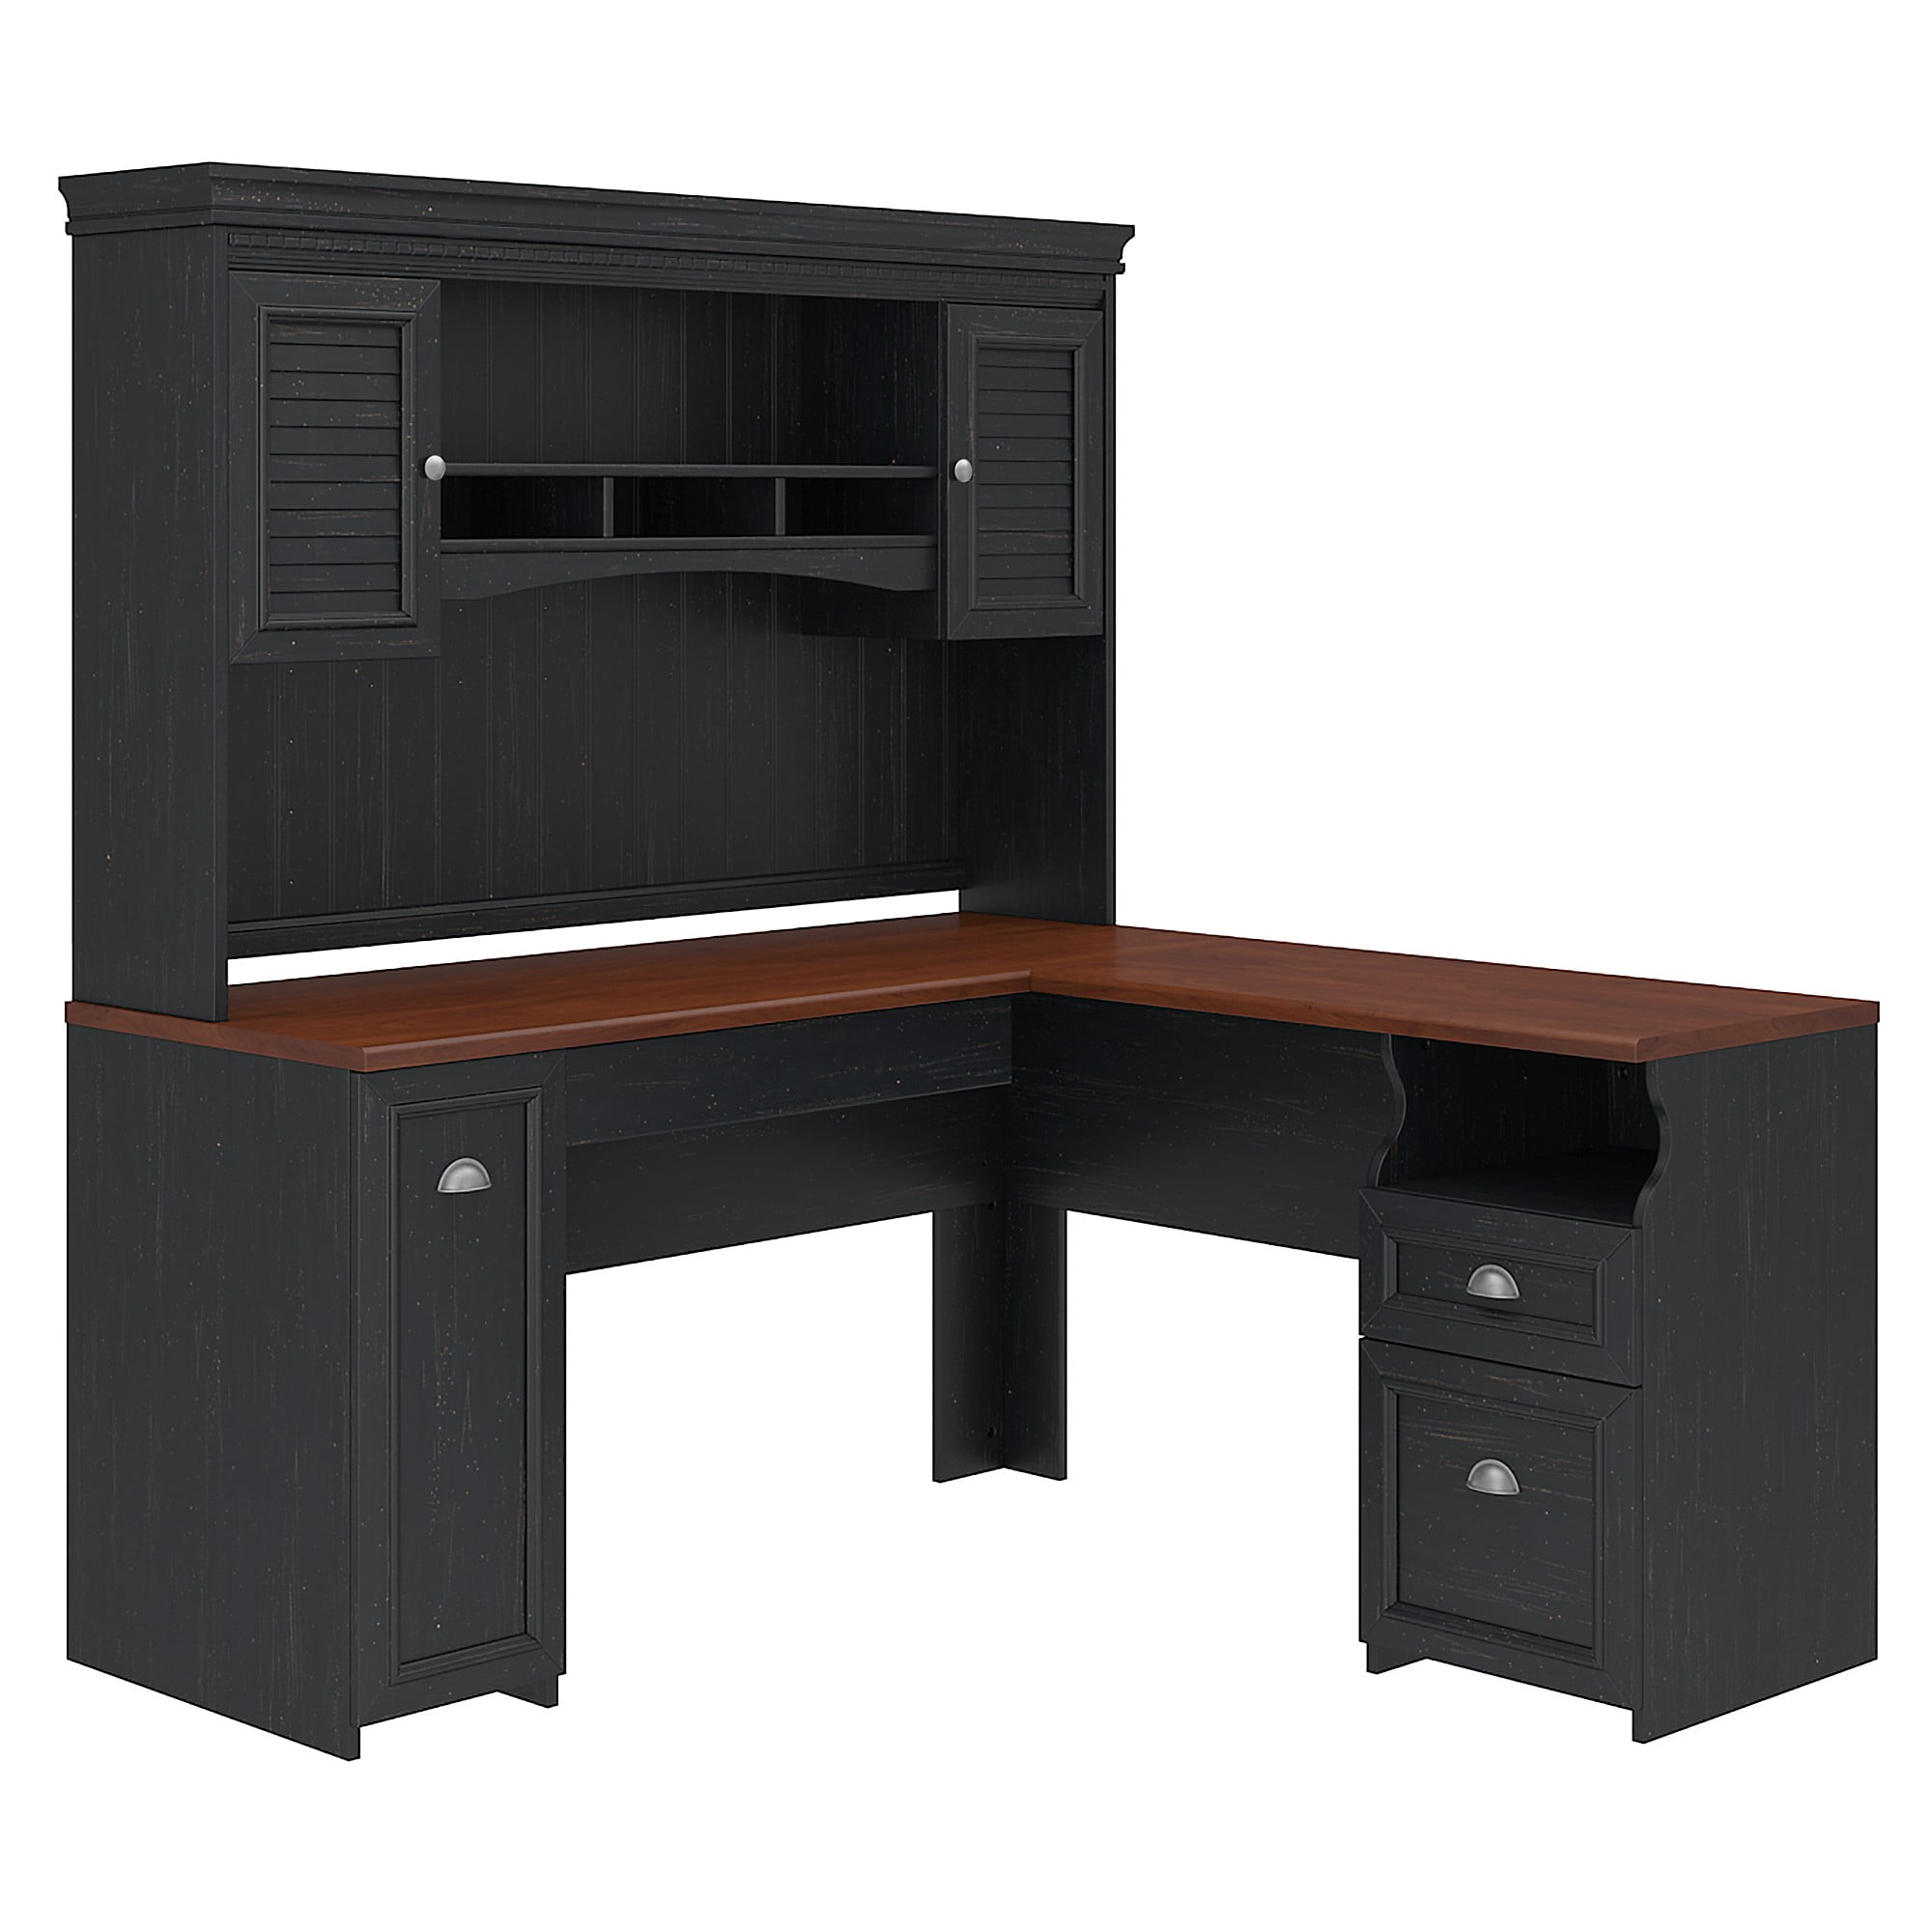 Bush Furniture Fairview L Shaped Desk, Antique Black Desk With Hutch